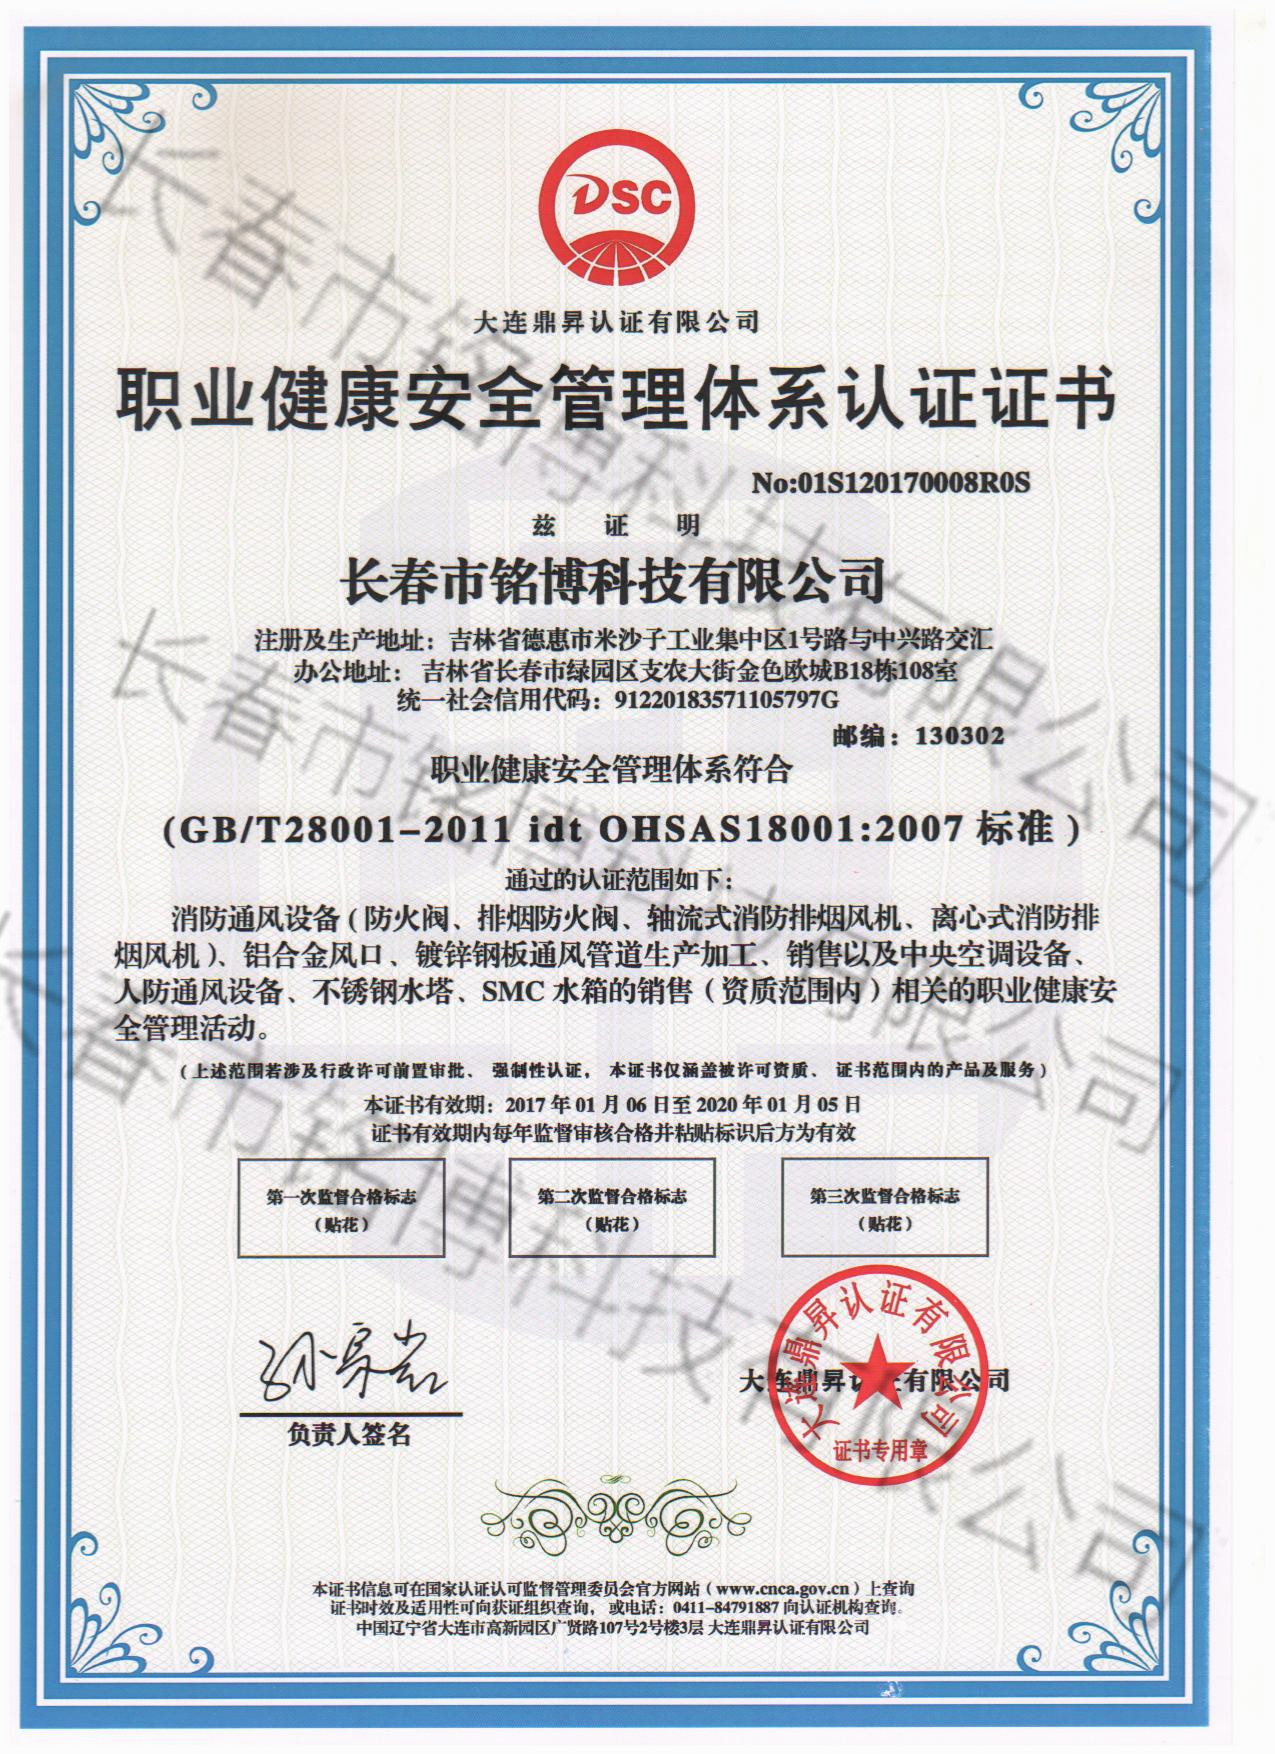 铭博职业健康安全管理体系认证证书